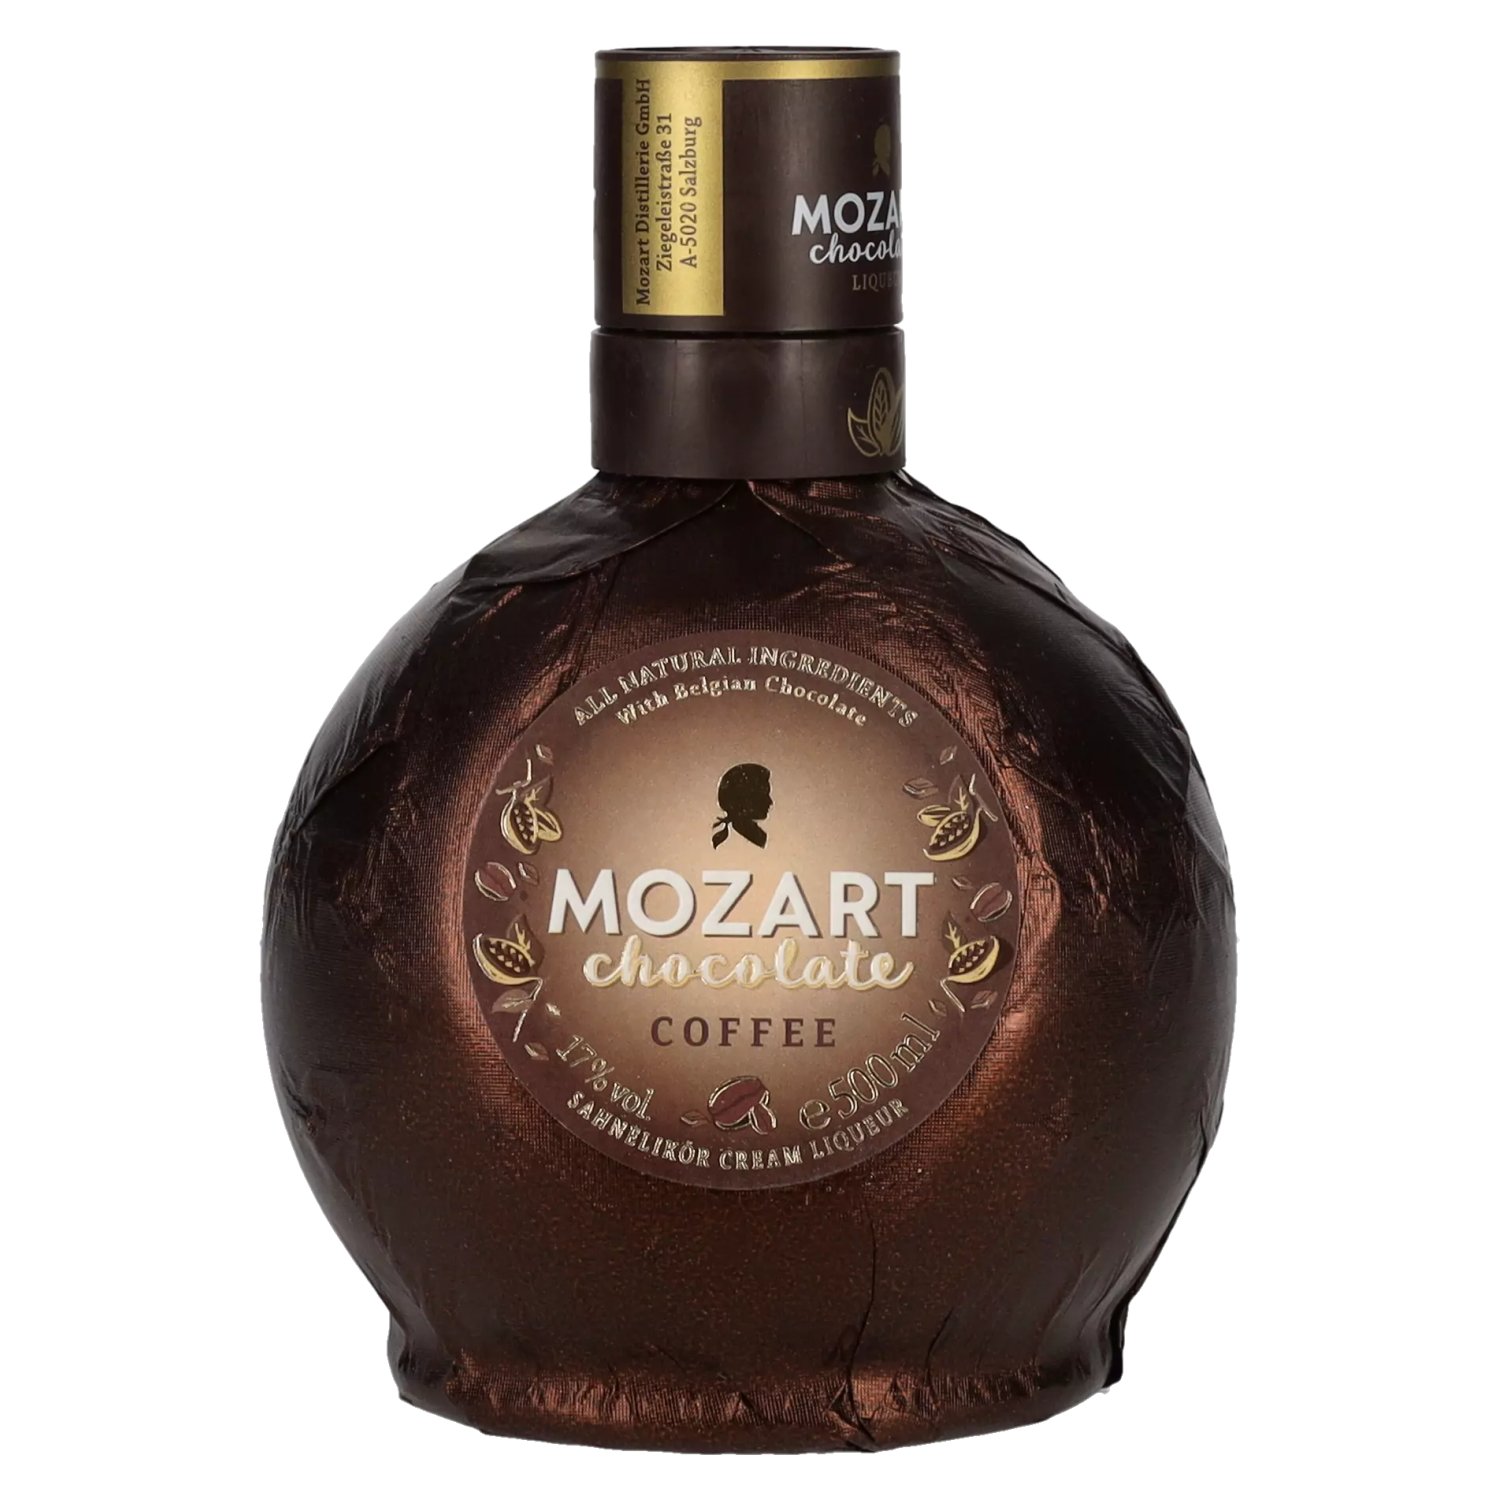 Mozart Chocolate Coffee - 0,5l delicando 17% Vol